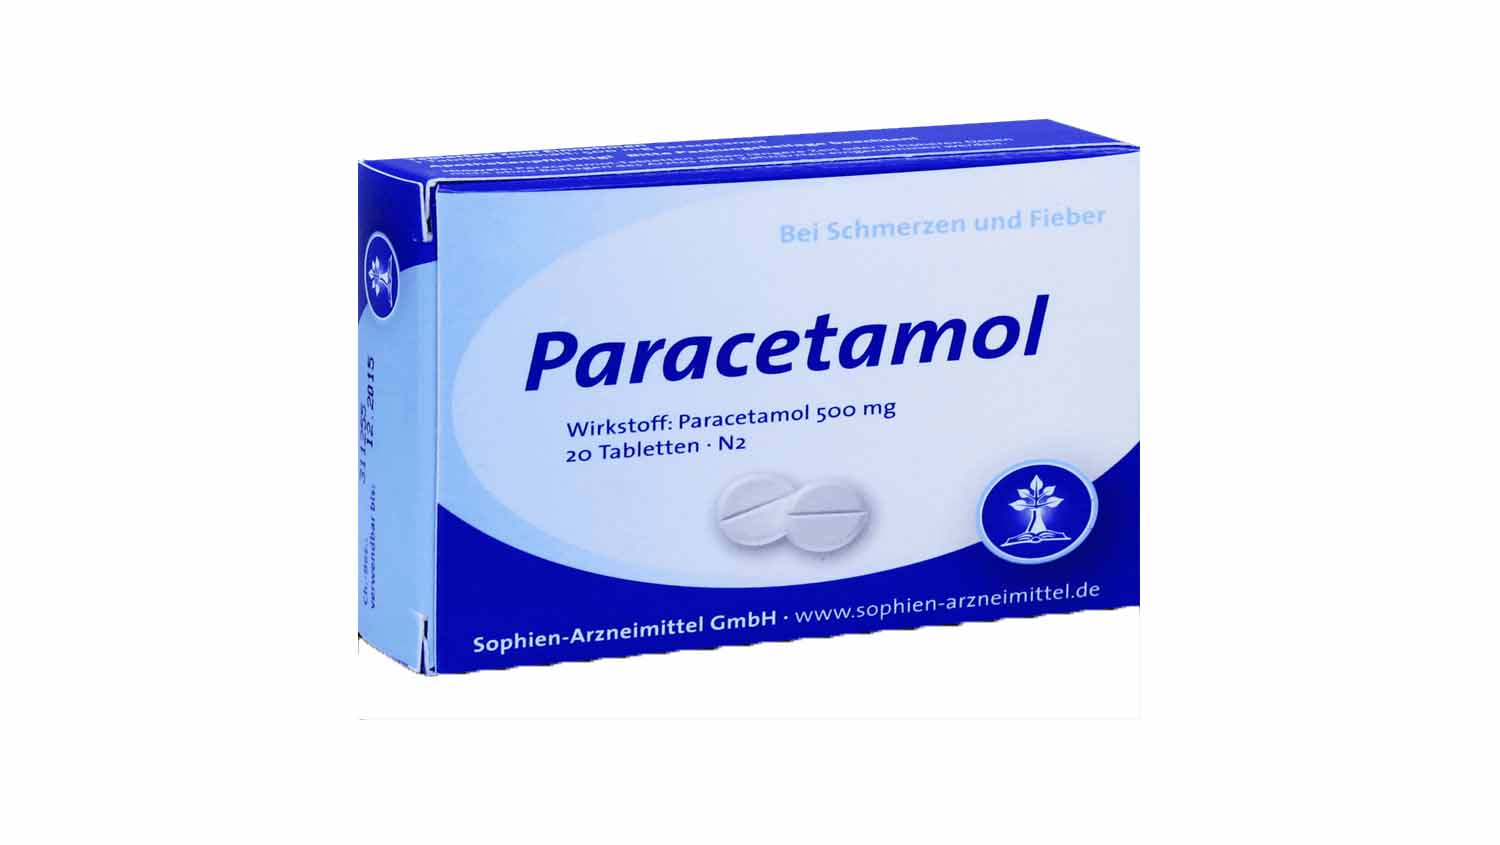 Paracetamol y alcohol cuanto tiempo